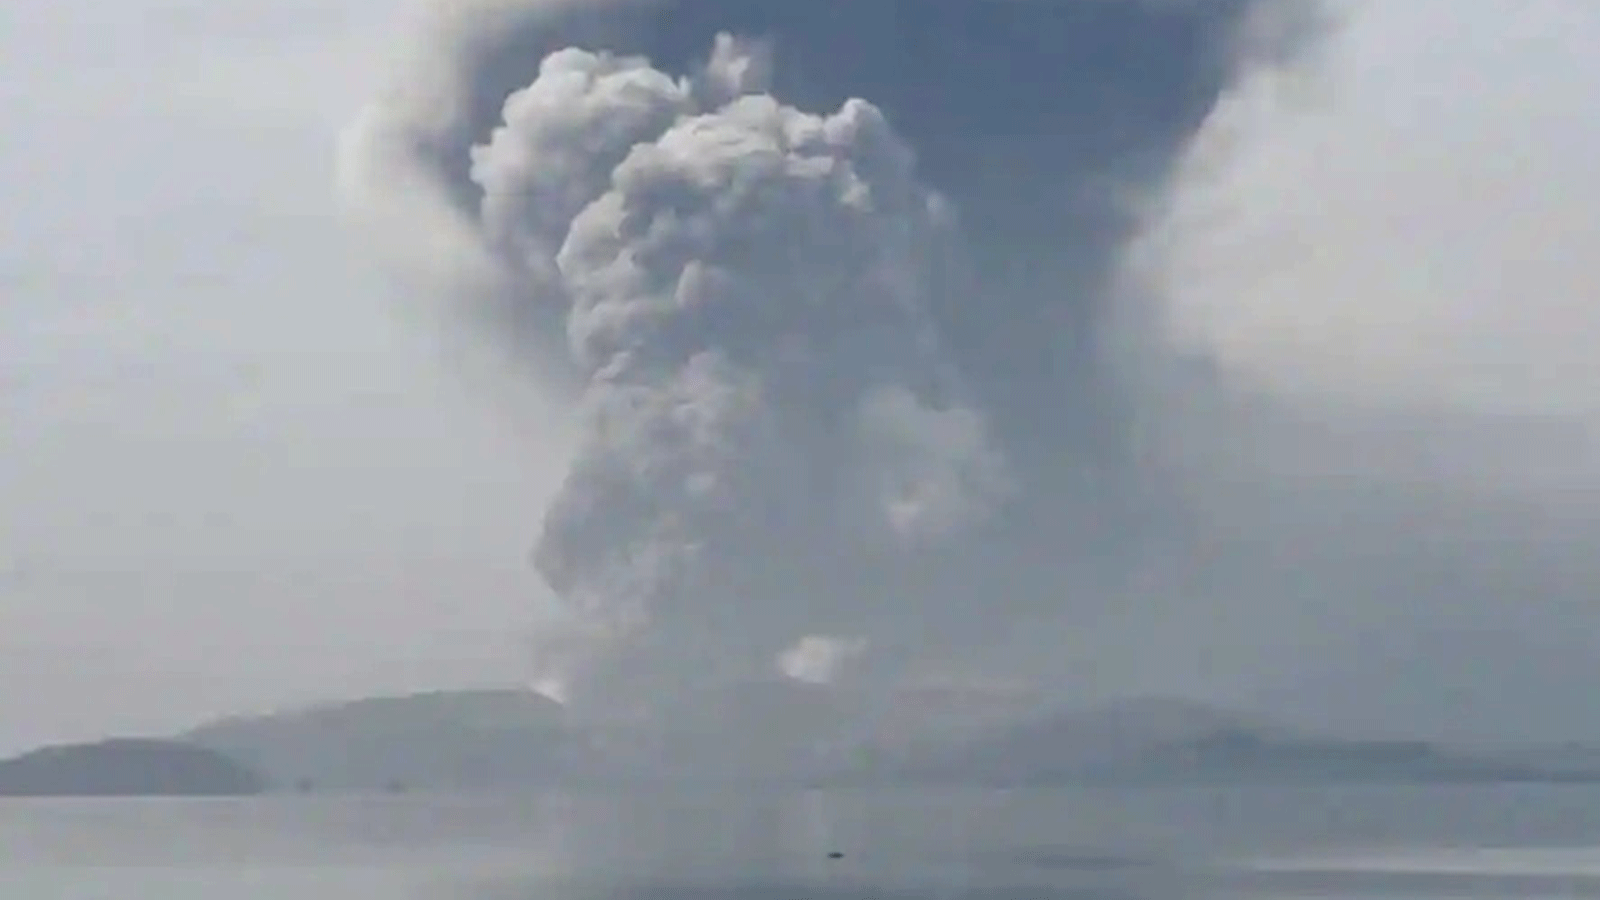 البركان النشط في الفليبين ينفث غازات سامة ويهدد بانفجار